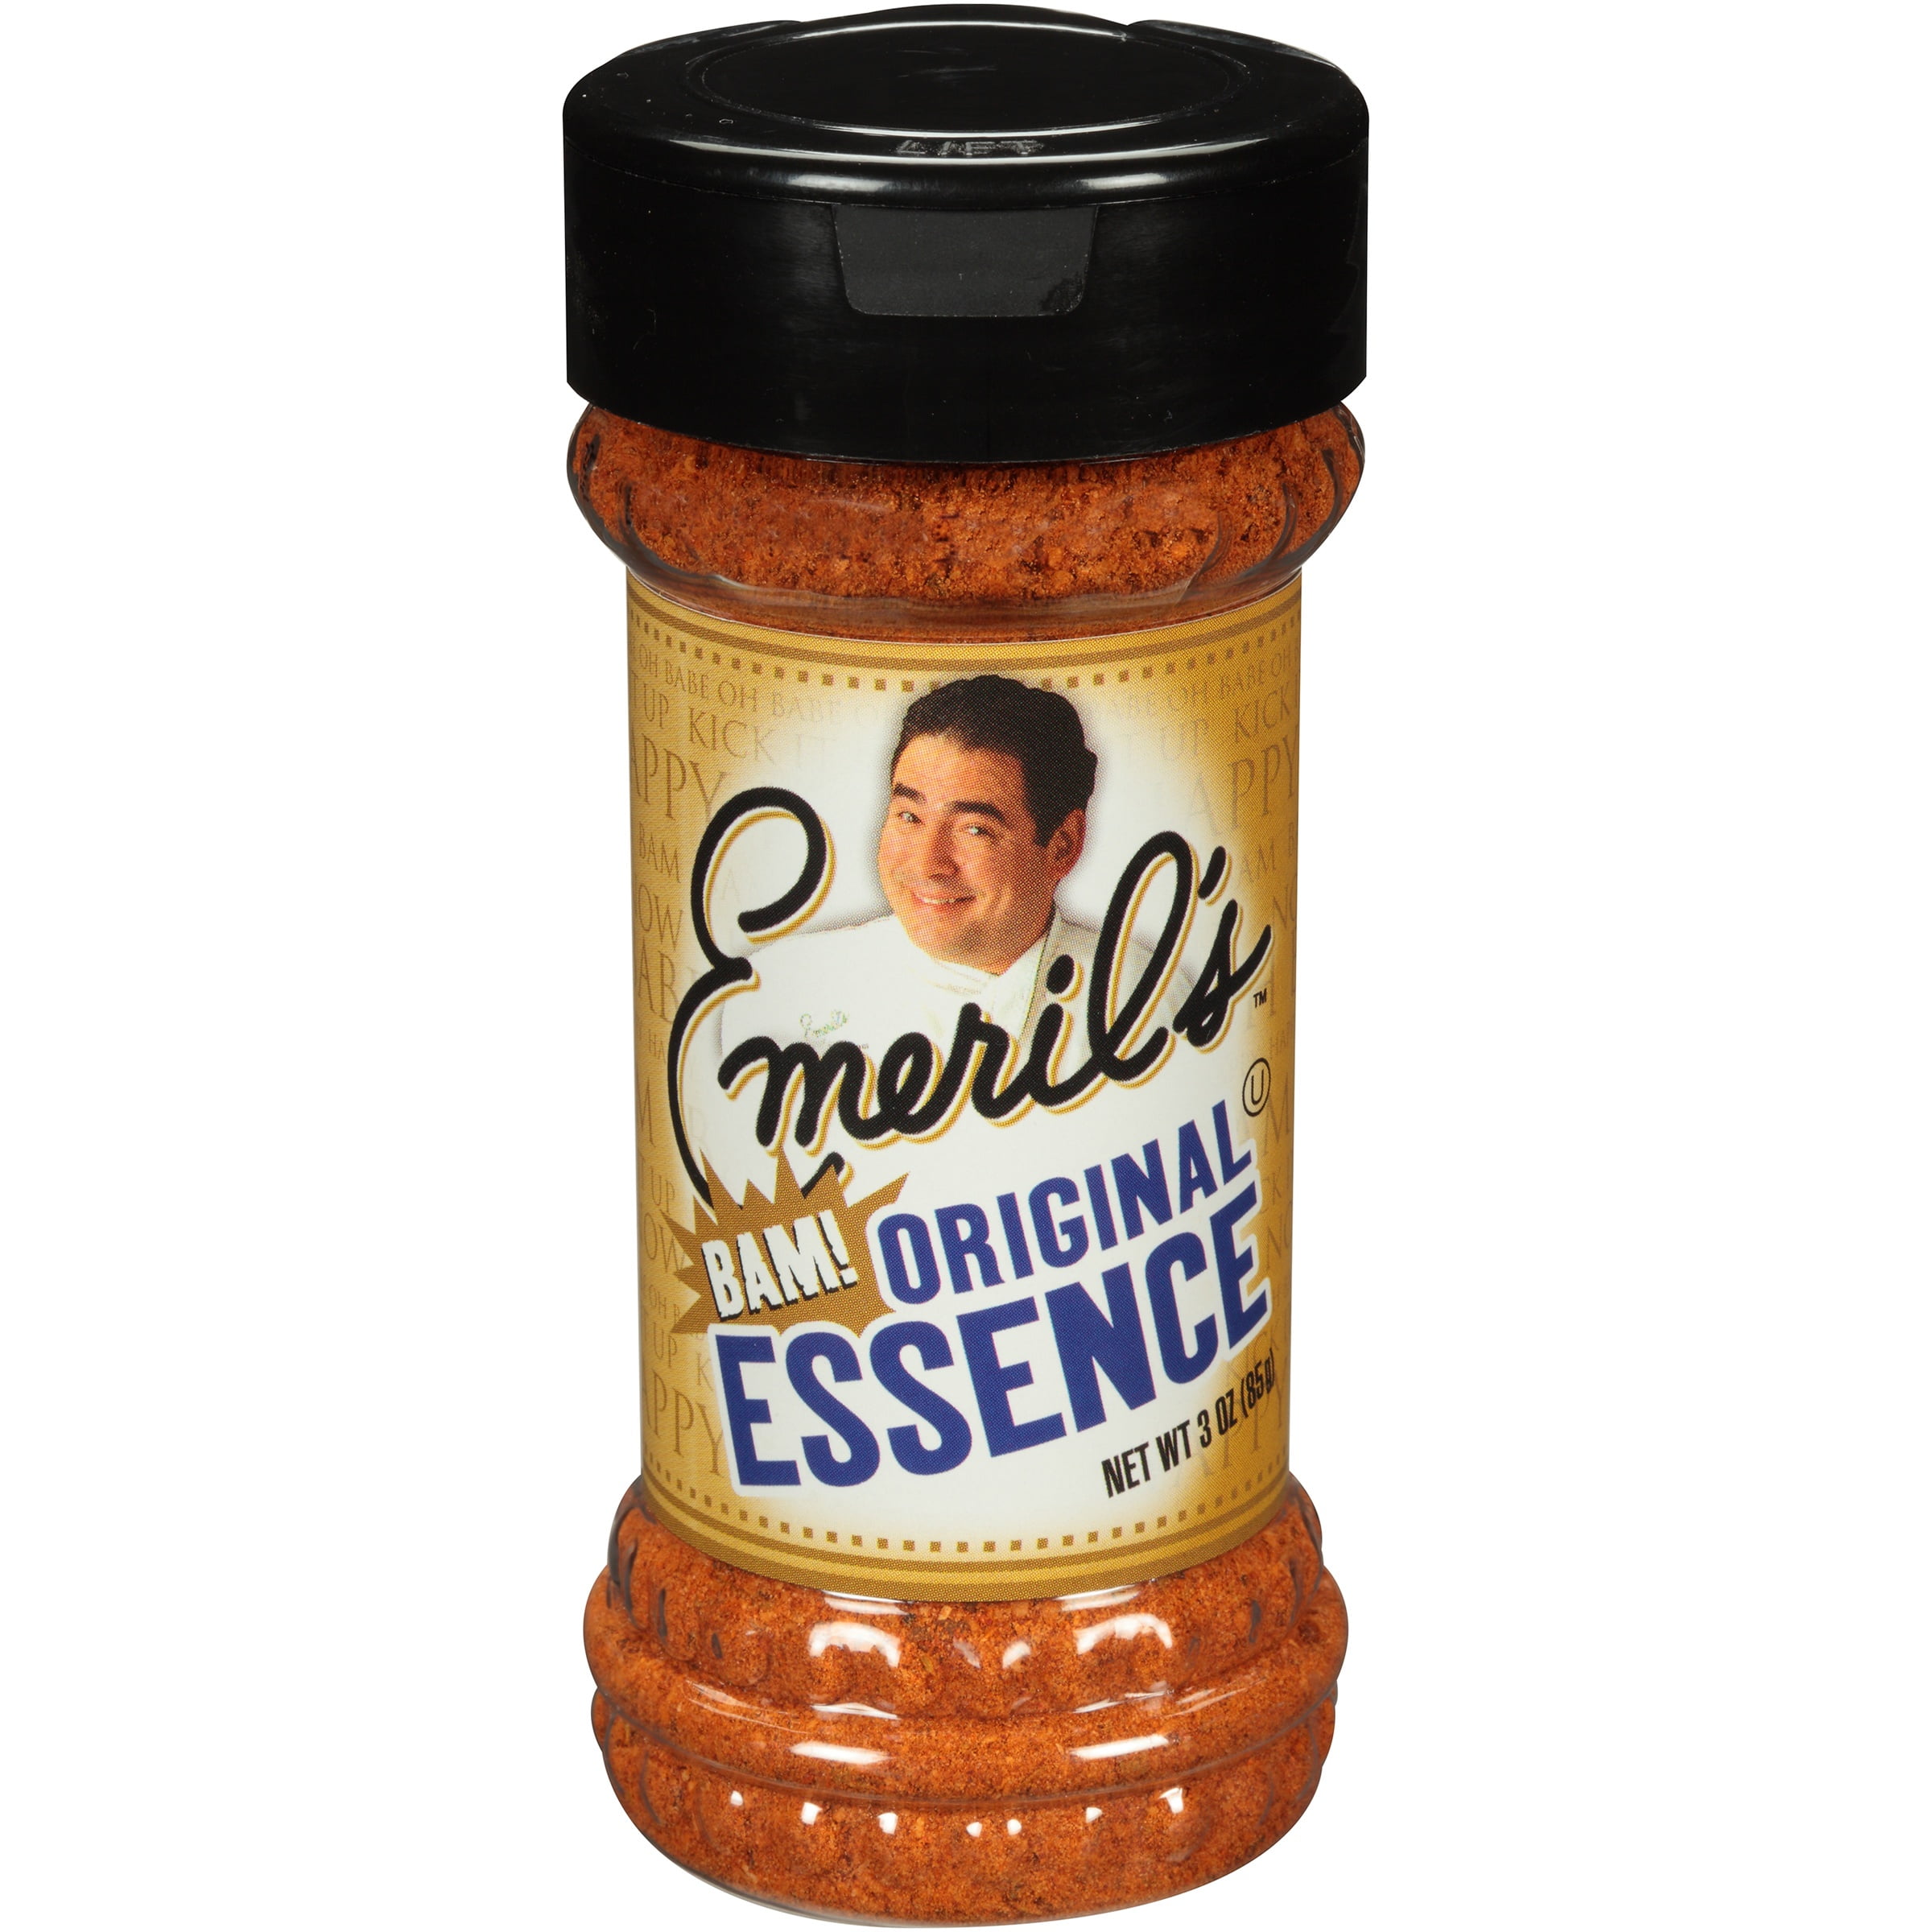 emeril seasoning